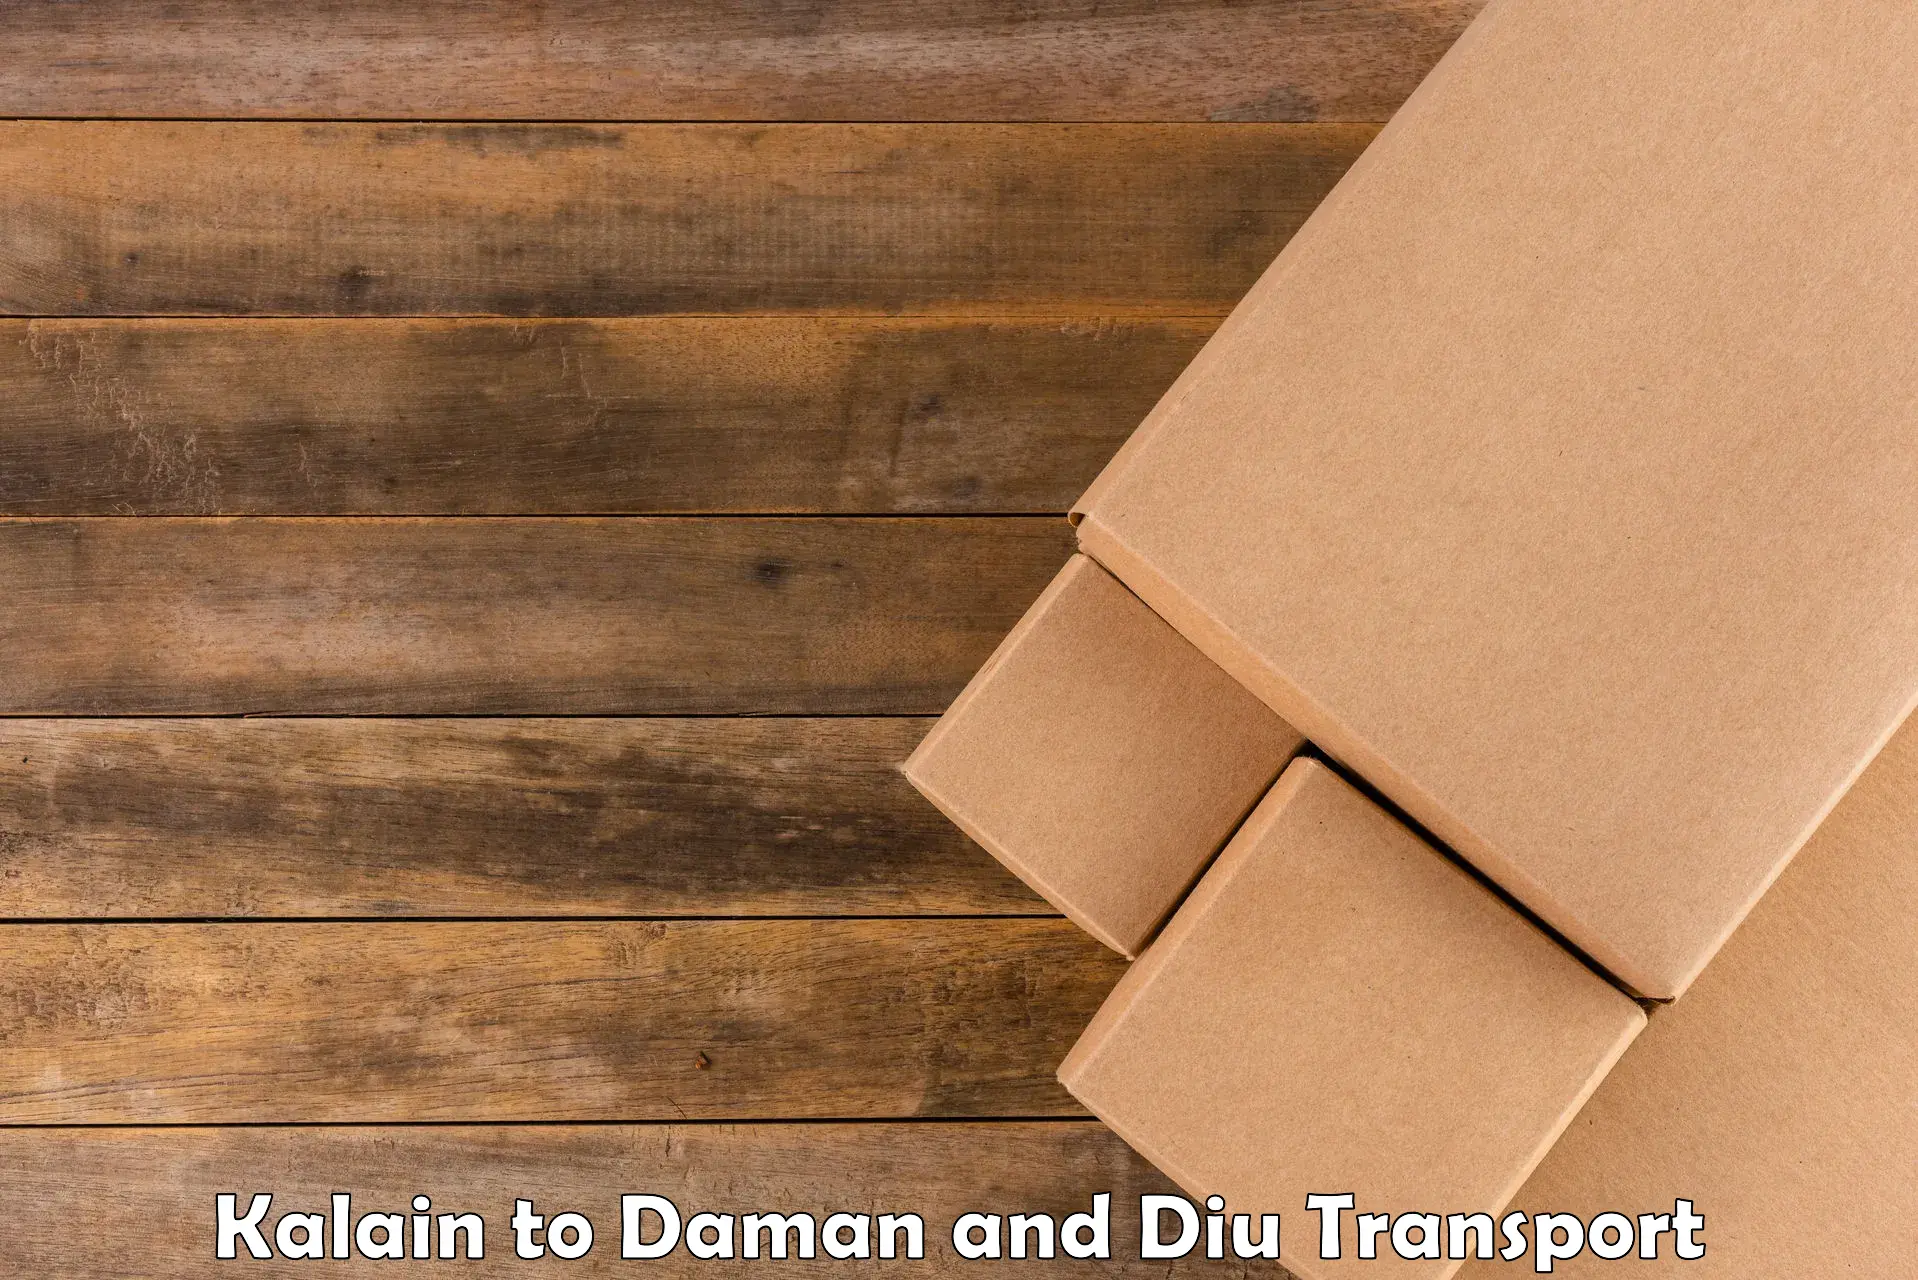 Cargo transport services Kalain to Daman